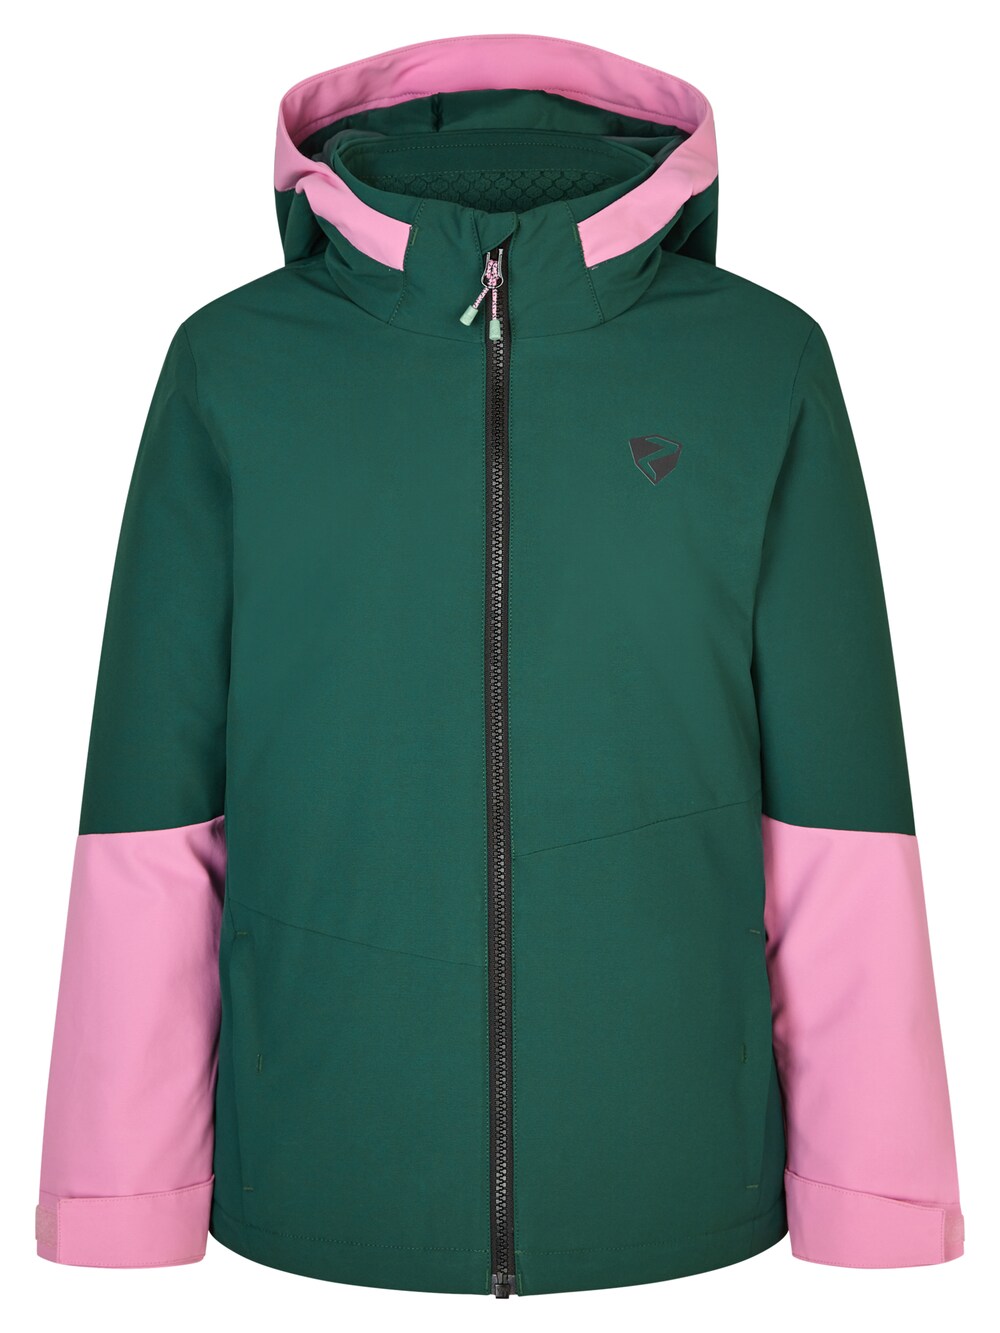 Спортивная куртка Ziener AVAK, зеленый/розовый спортивная куртка ziener avak фиолетовый